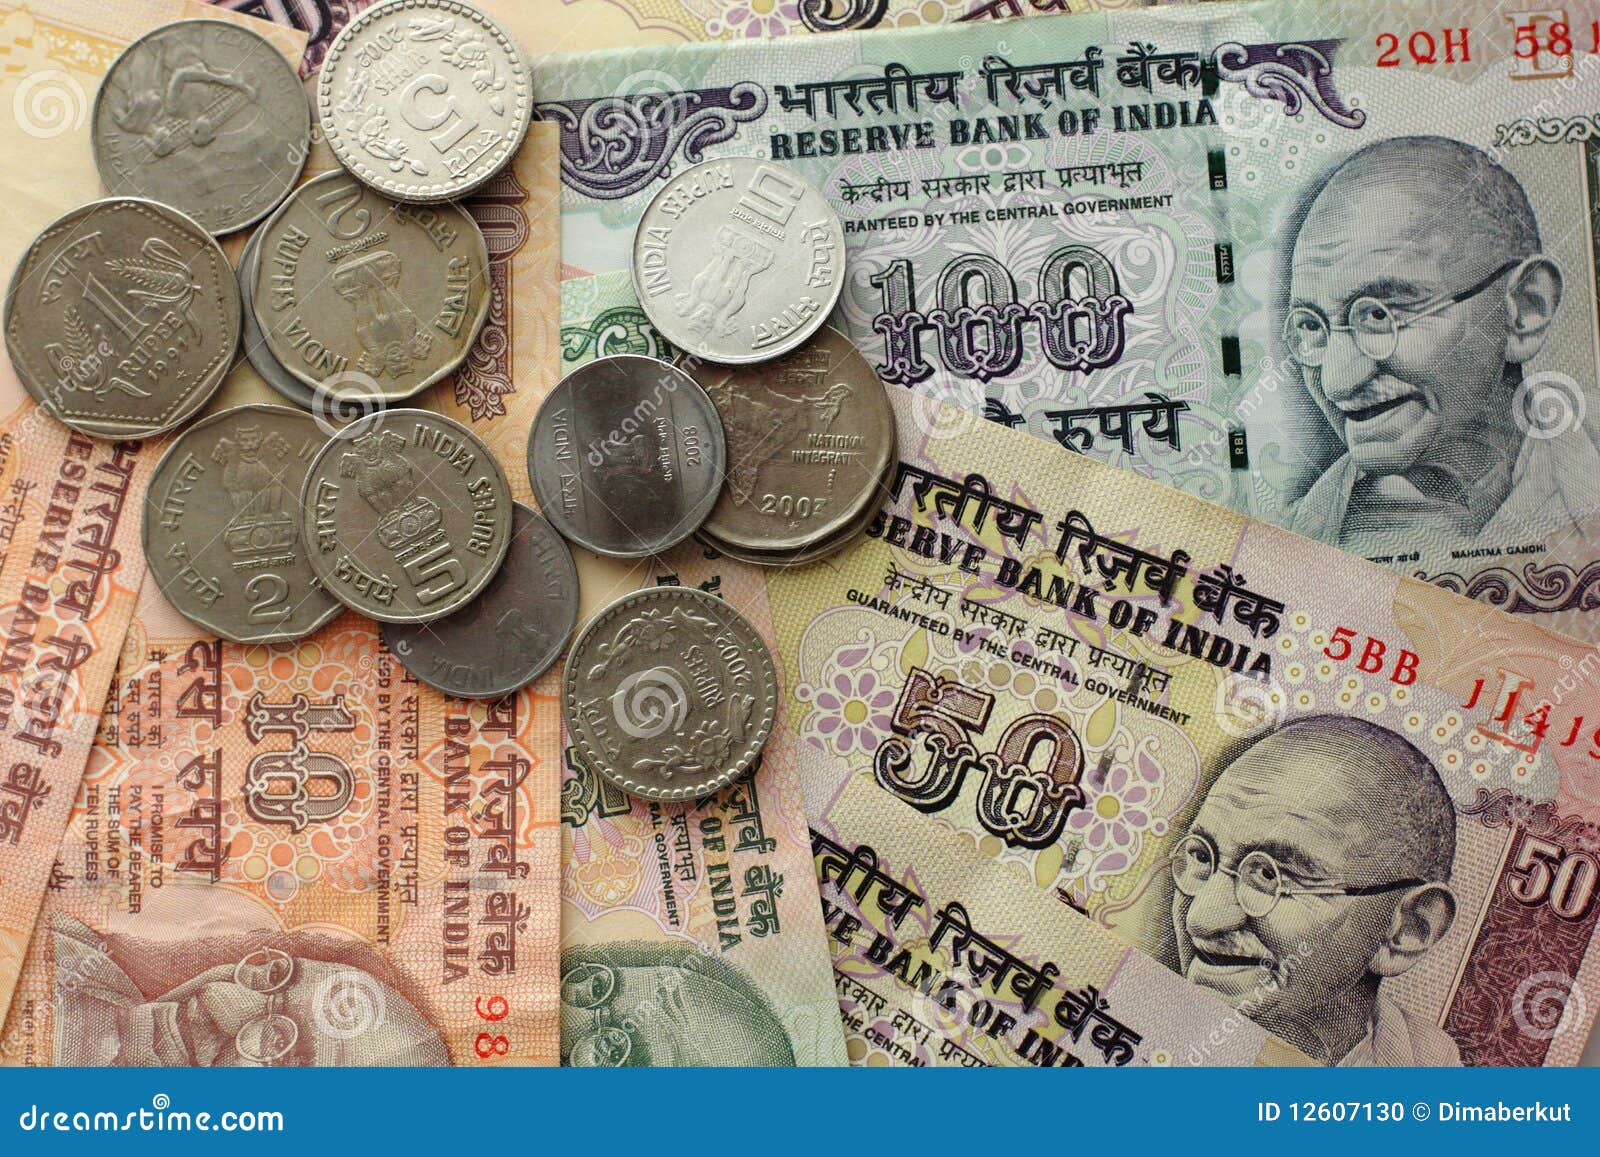 Поменять рубль на рупии. Валюта Индии. Денежная валюта Индии. Валюта индийская рупия. Индия валюта рупий.